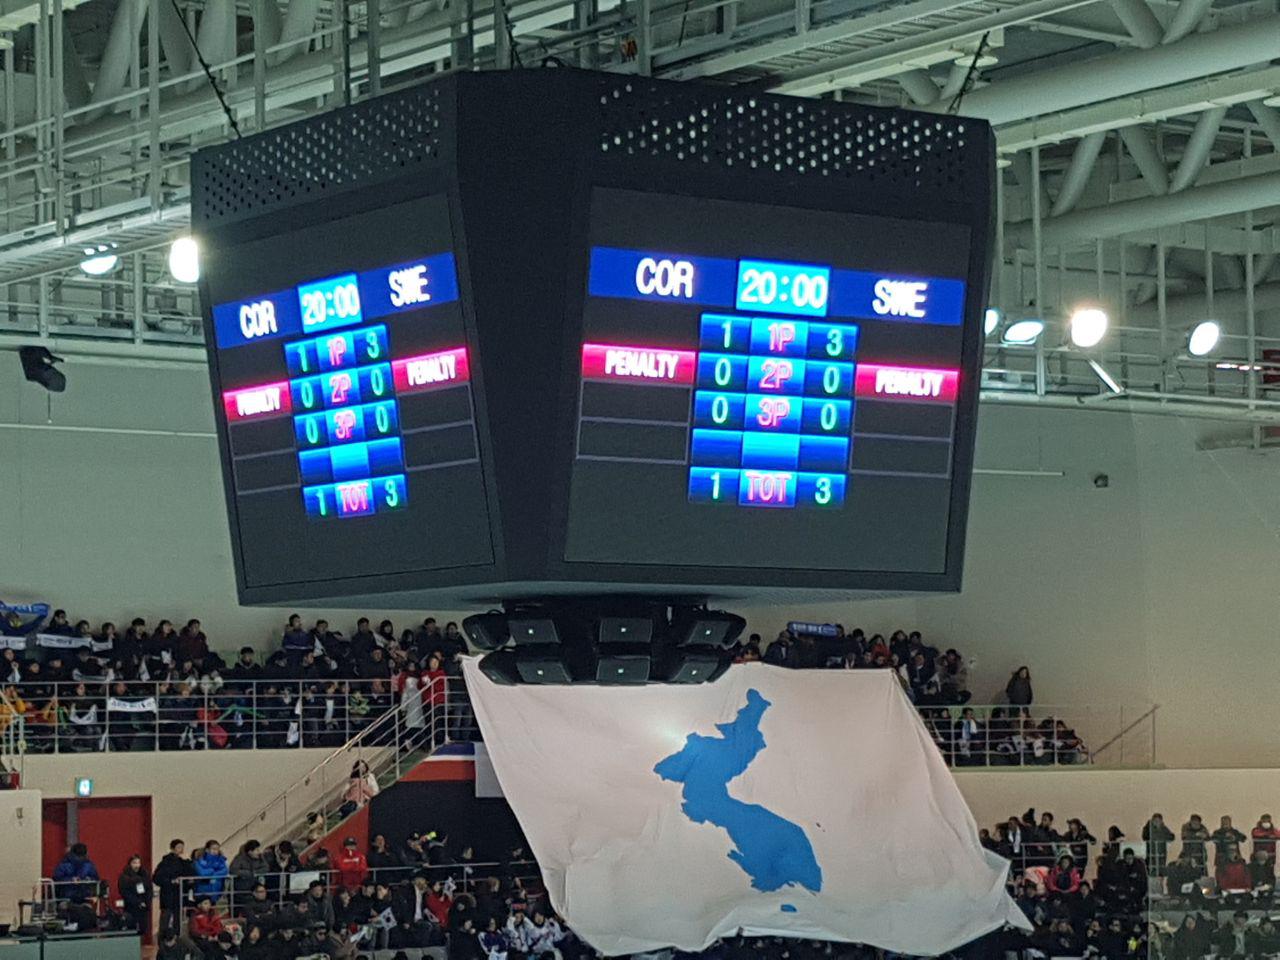 평창겨울올림픽을 앞두고 남북 여자아이스하키 단일팀과 스웨덴의 평가전이 열린 선학 국제빙상경기장의 모습. 전광판에 불이 들어온 단일팀(코리아팀)의 영문 약칭 'COR'와 스웨덴의 영문 약칭 'SWE'가 보인다.